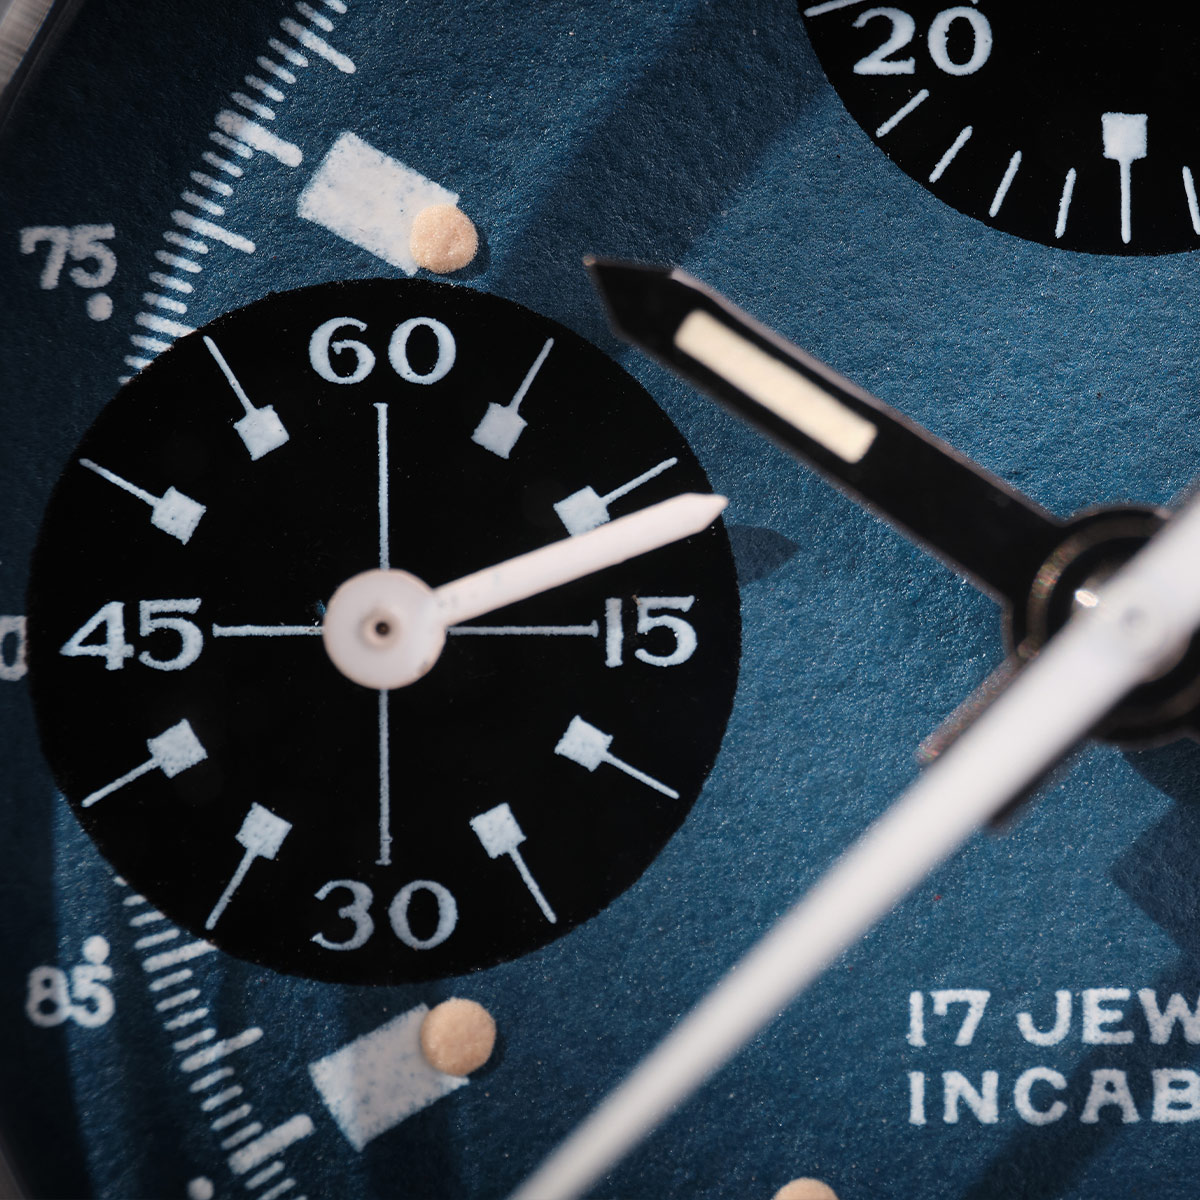 Prototype Paul Newman Valjoux 7765 chronograph